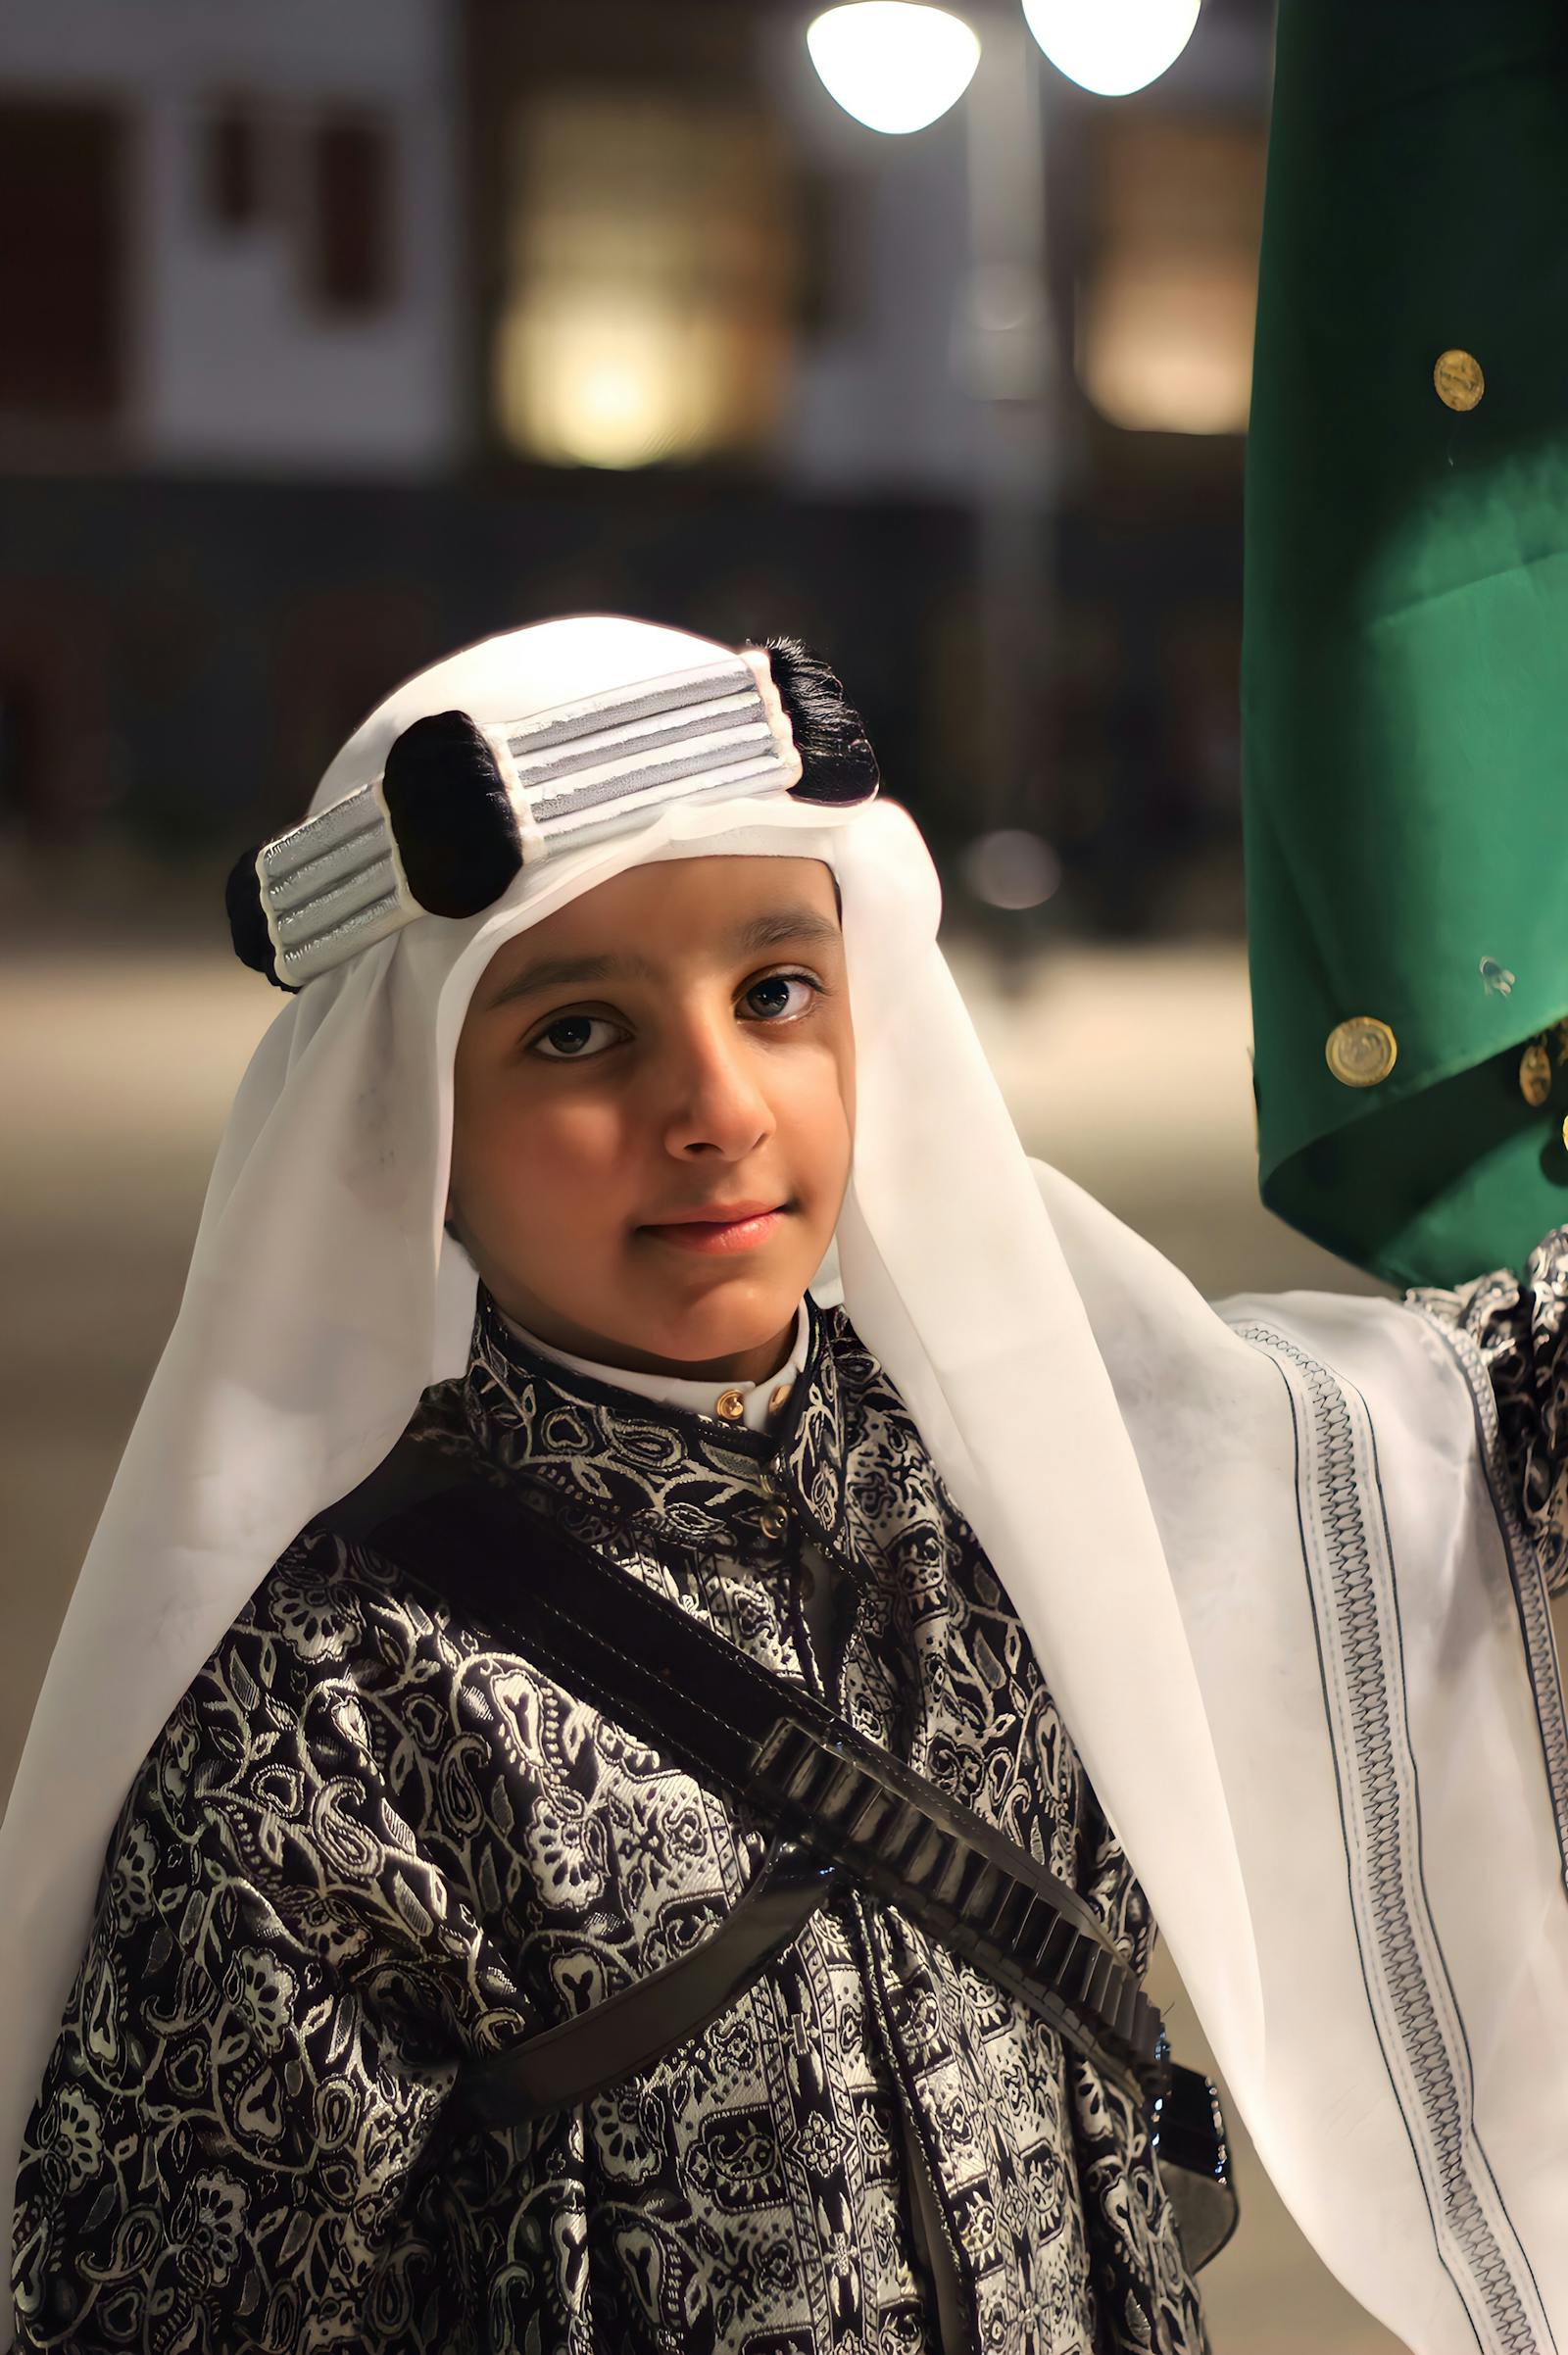 What it's like to drive Saudi Arabian princesses around | WLRN